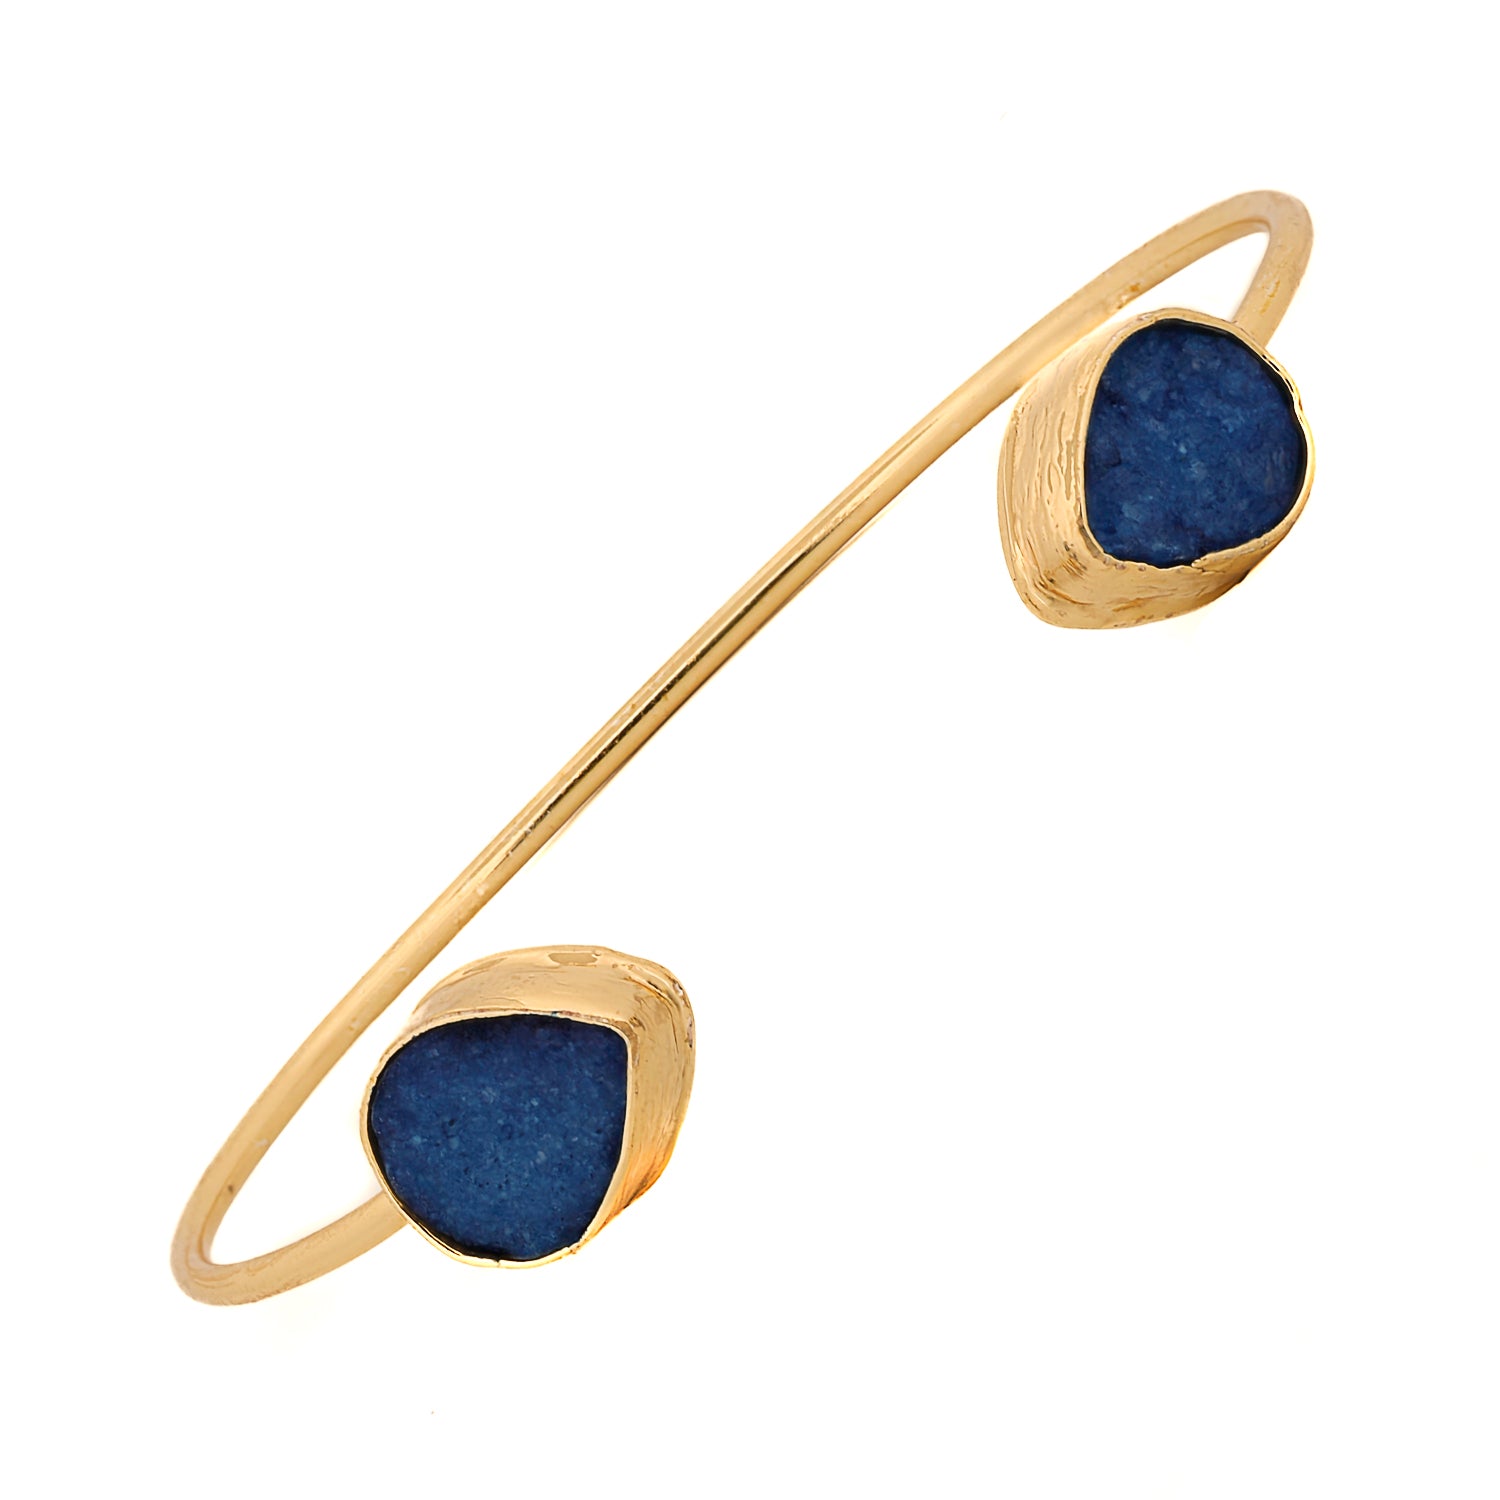 Cleopatra Blue Druzy Agate Gold Cuff Bracelet